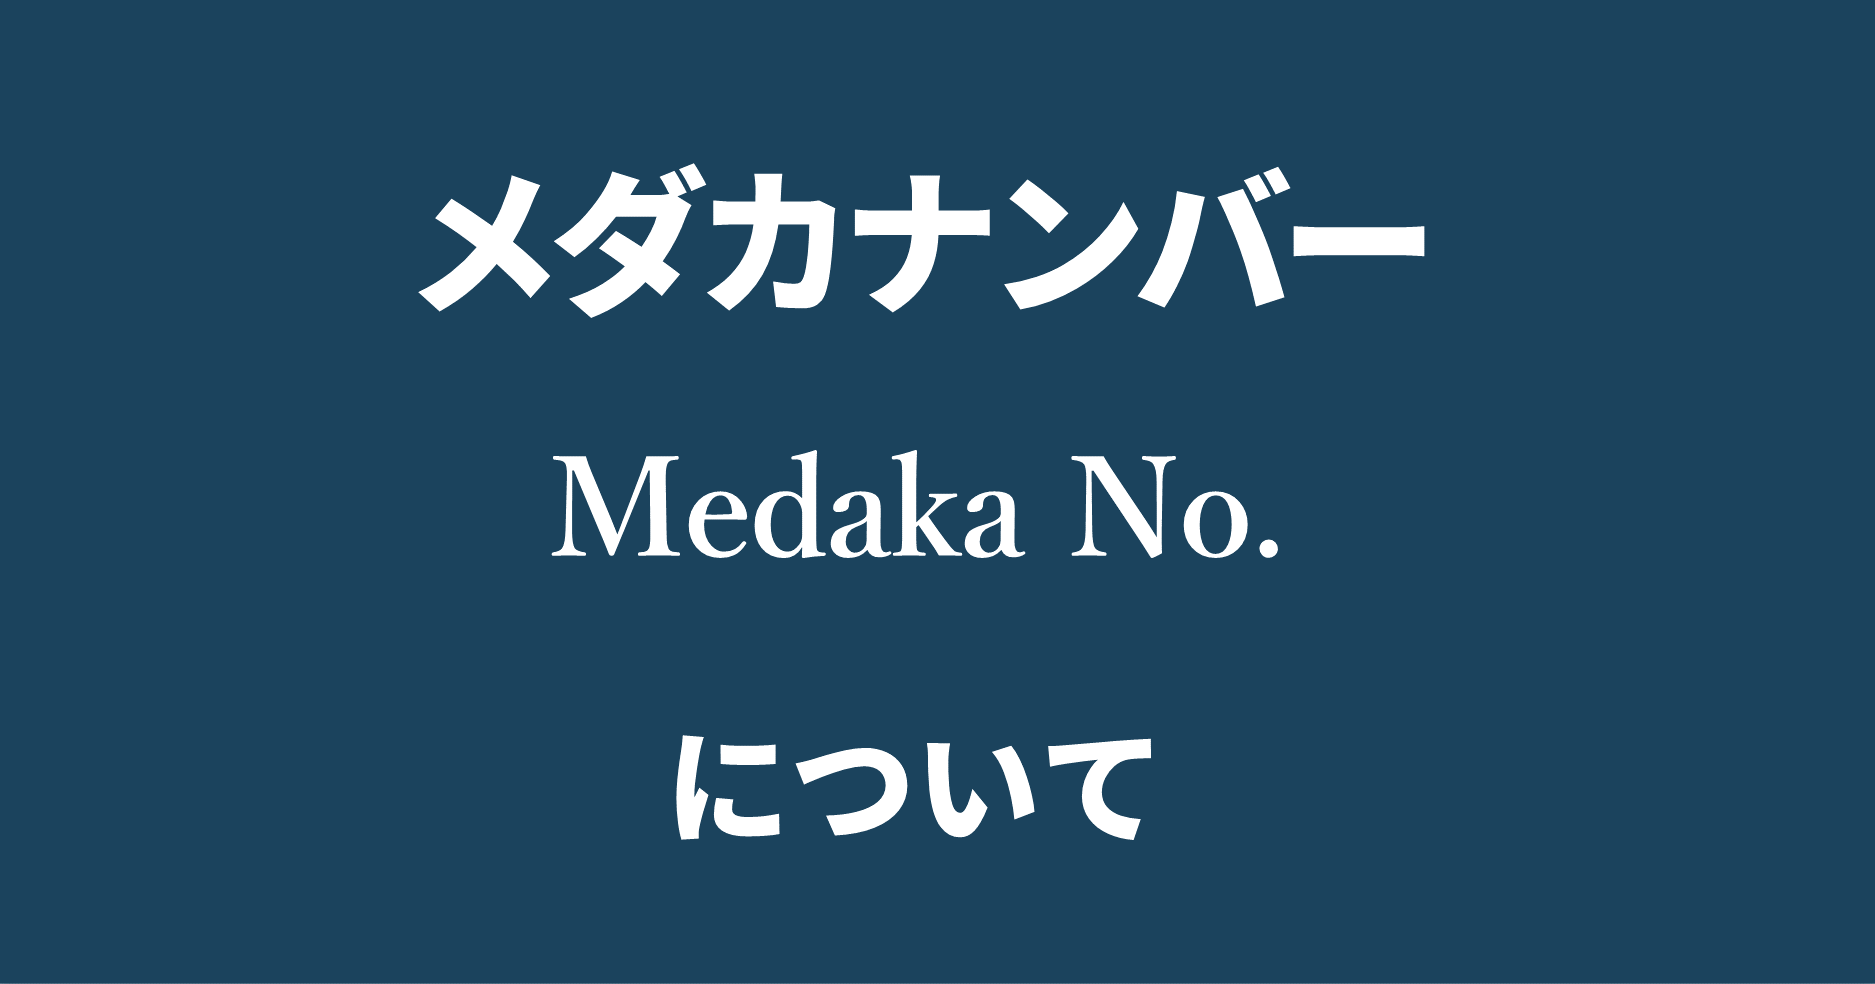 改良メダカのメダカナンバー Medaka No について ブログ 改良メダカweb図鑑